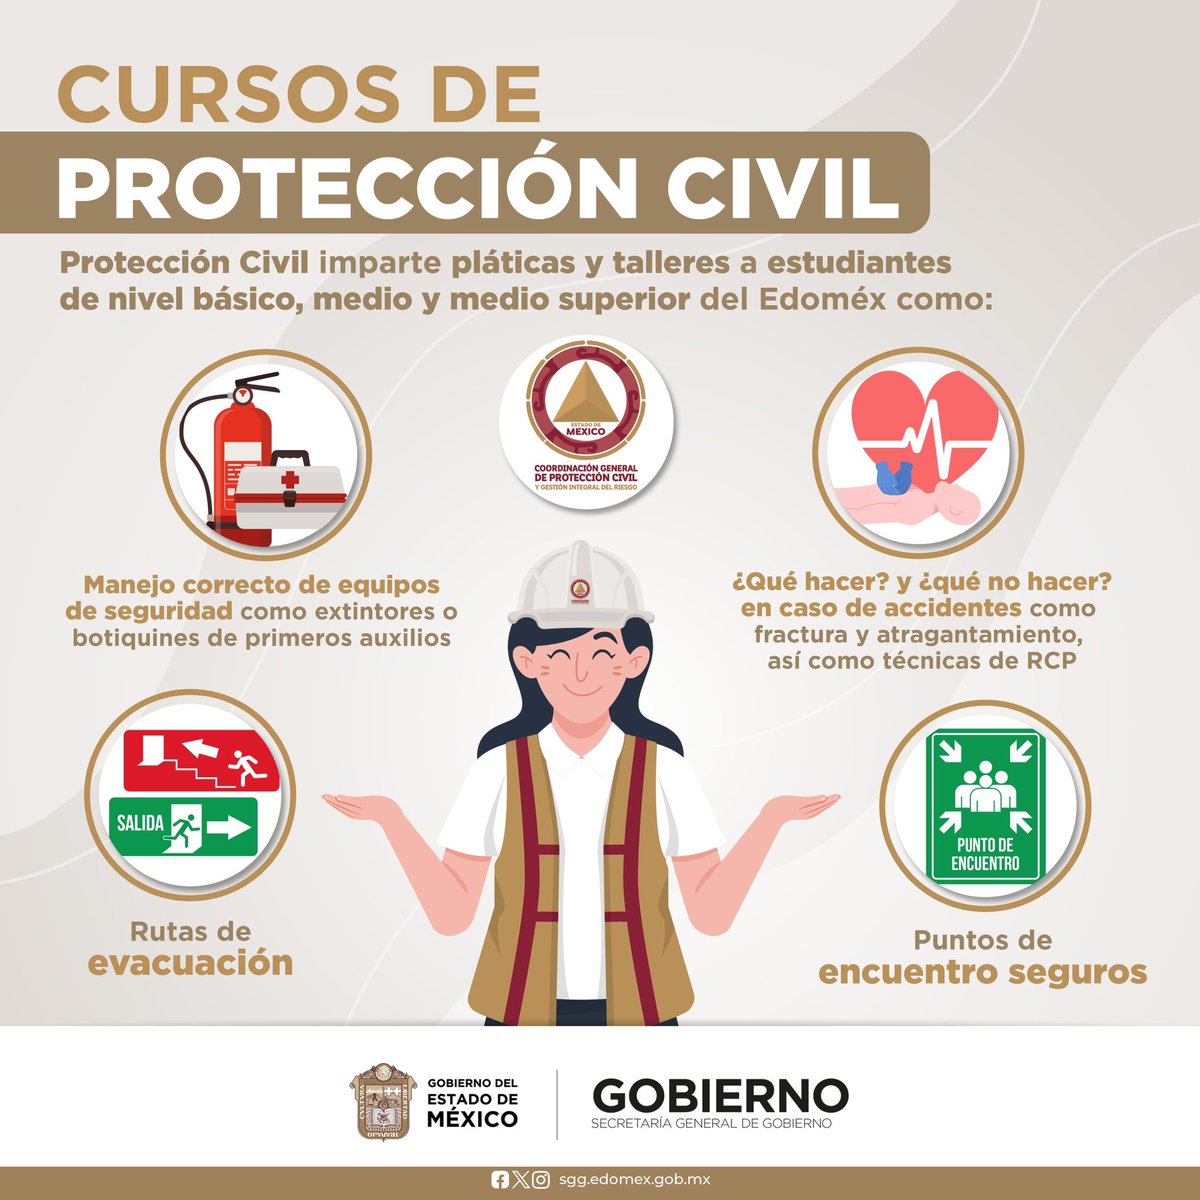 ¡En el Estado de México, con los cursos de Protección Civil, las y los estudiantes están preparados para emergencias! Desde el nivel básico hasta el medio superior, adquieren habilidades vitales para actuar en situaciones de riesgo. #EdoMex